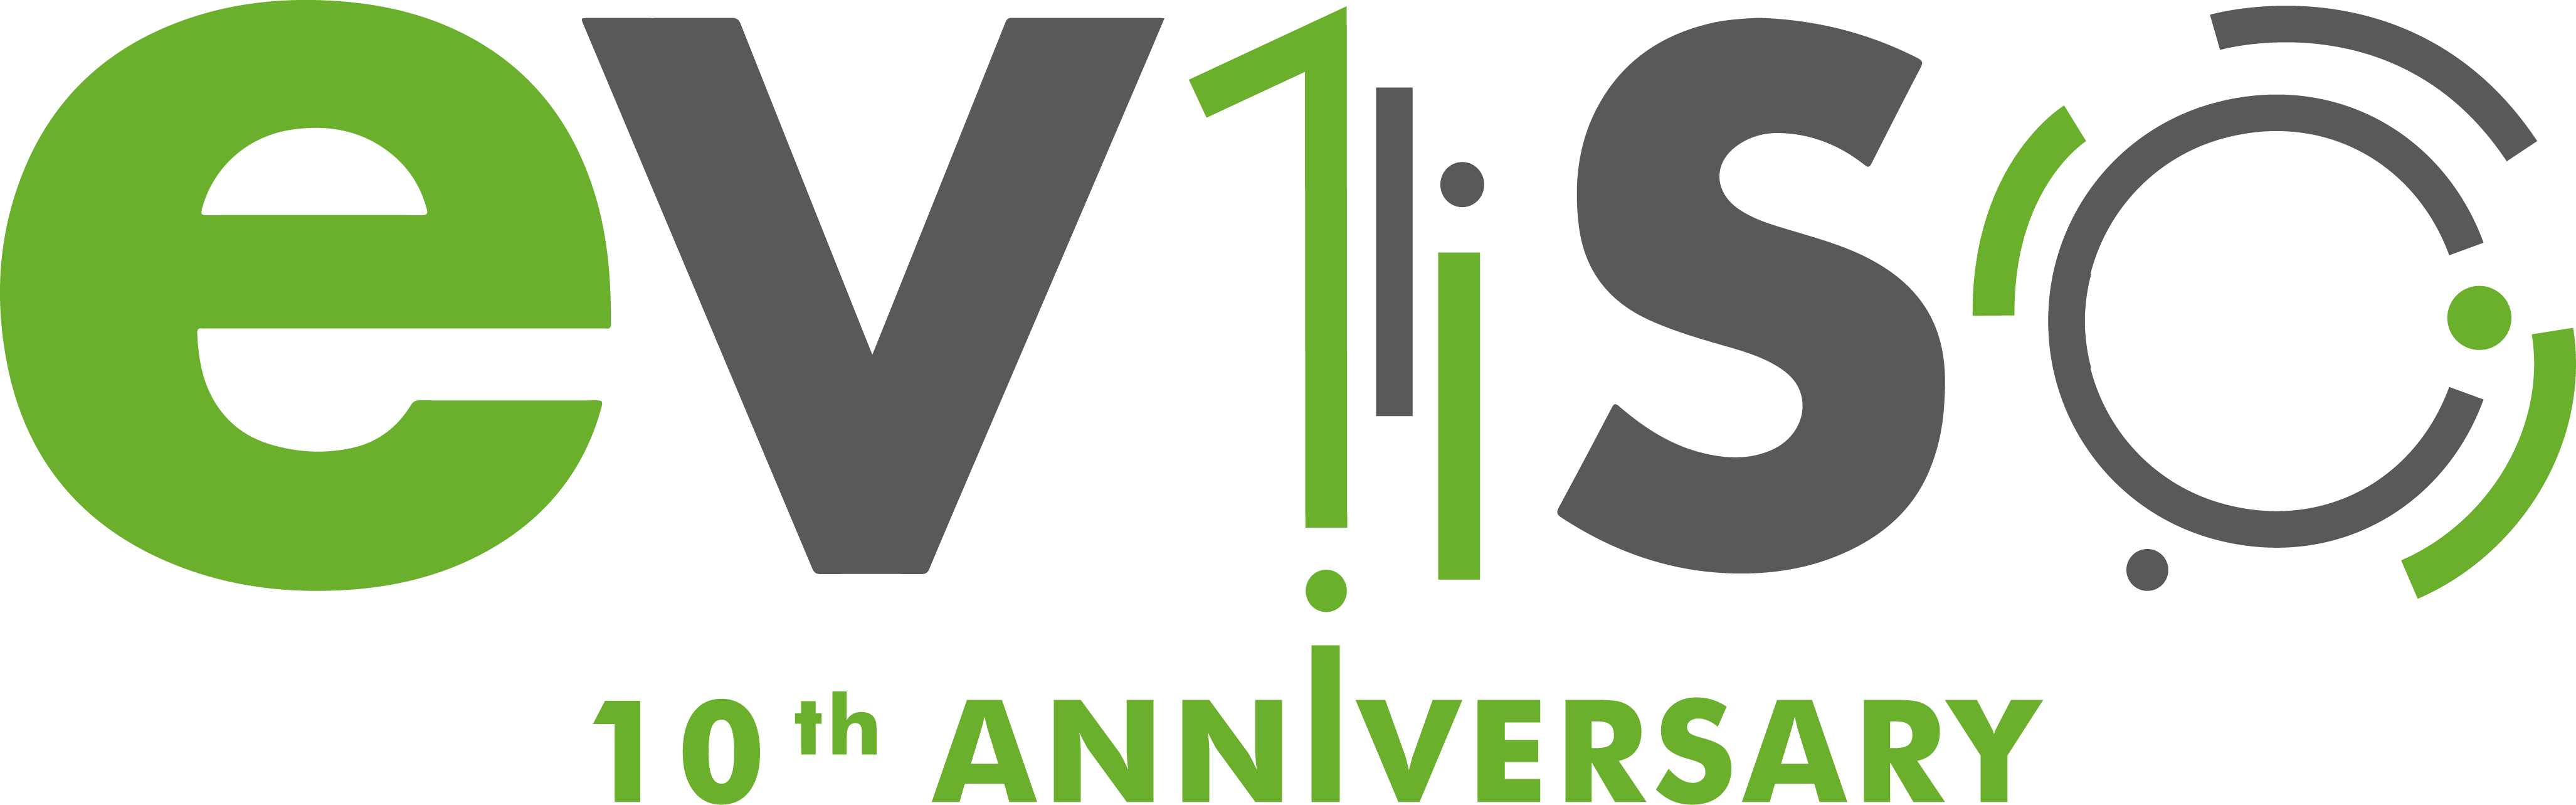 Logo eVISO celebrativo dei 10 anni di attività